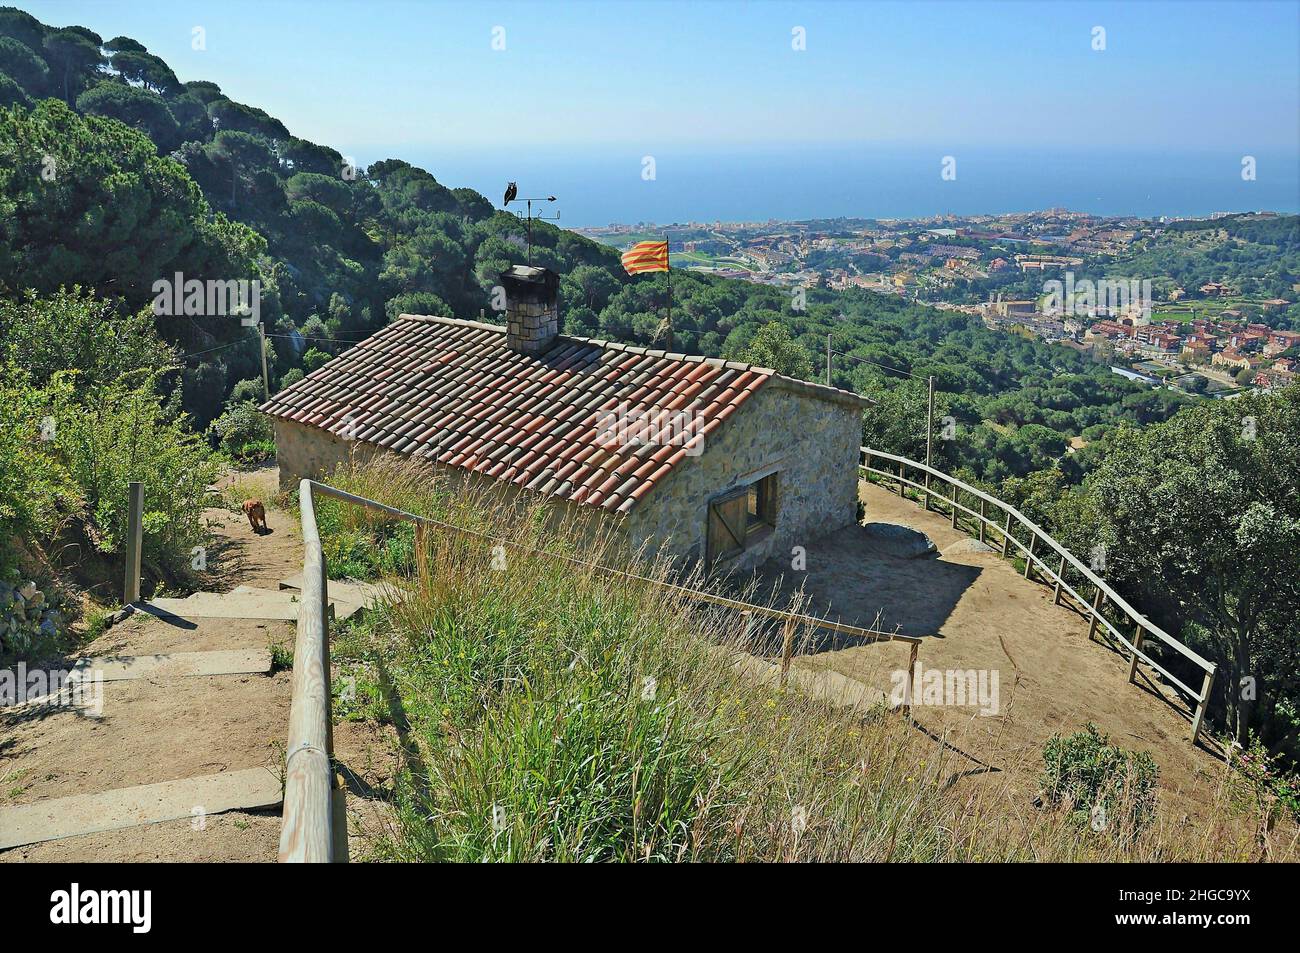 Schutz der Ferreria in Teià in der Region Maresme Provinz Barcelona, Katalonien, Spanien Stockfoto